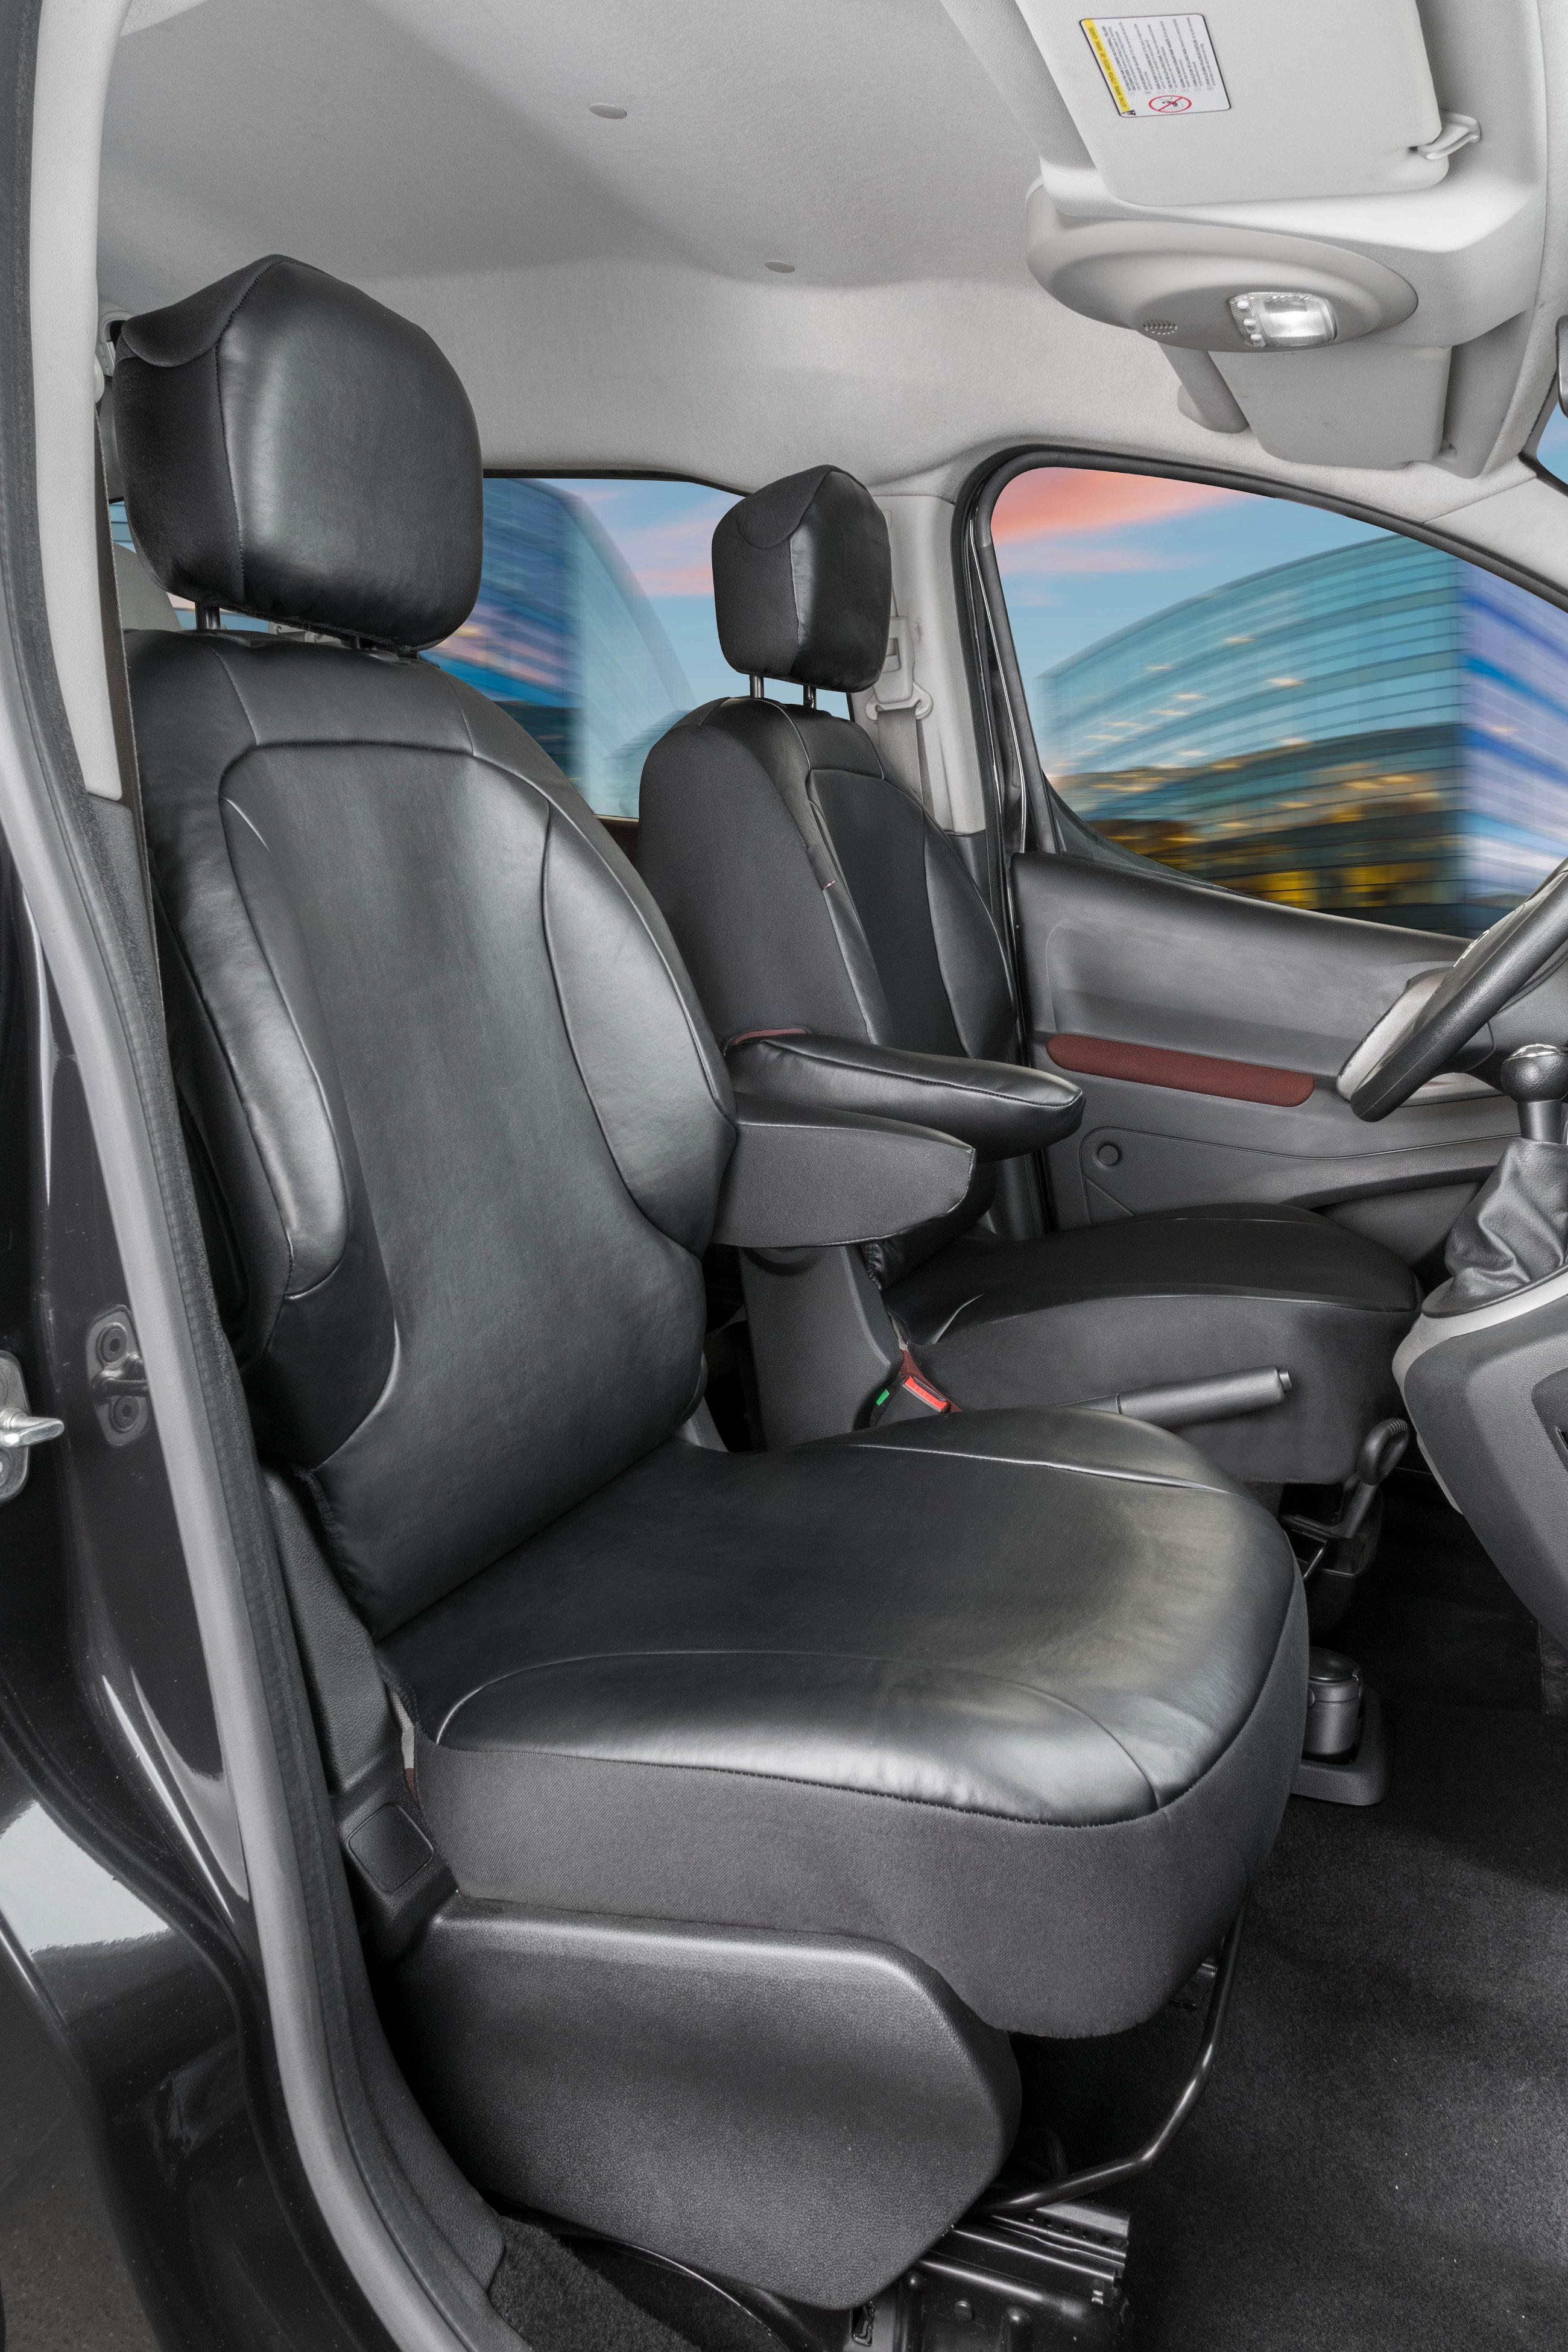 Housse de siège Transporter en simili cuir pour Citroën Berlingo, 2 sièges simples à l'avant